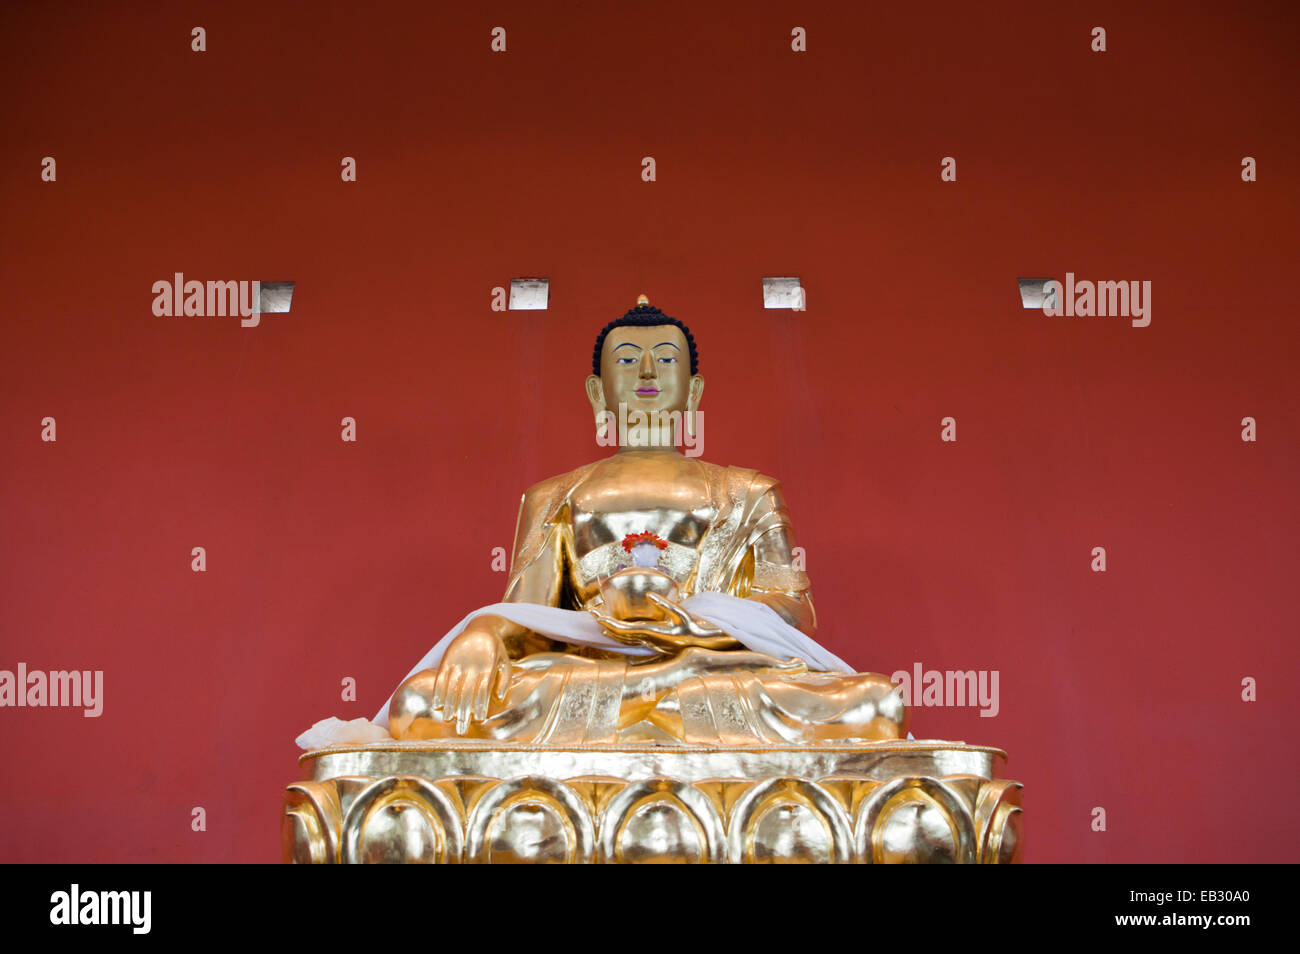 Images de bouddha, Close up visage de Bouddha en or, Malaga, Espagne Banque D'Images